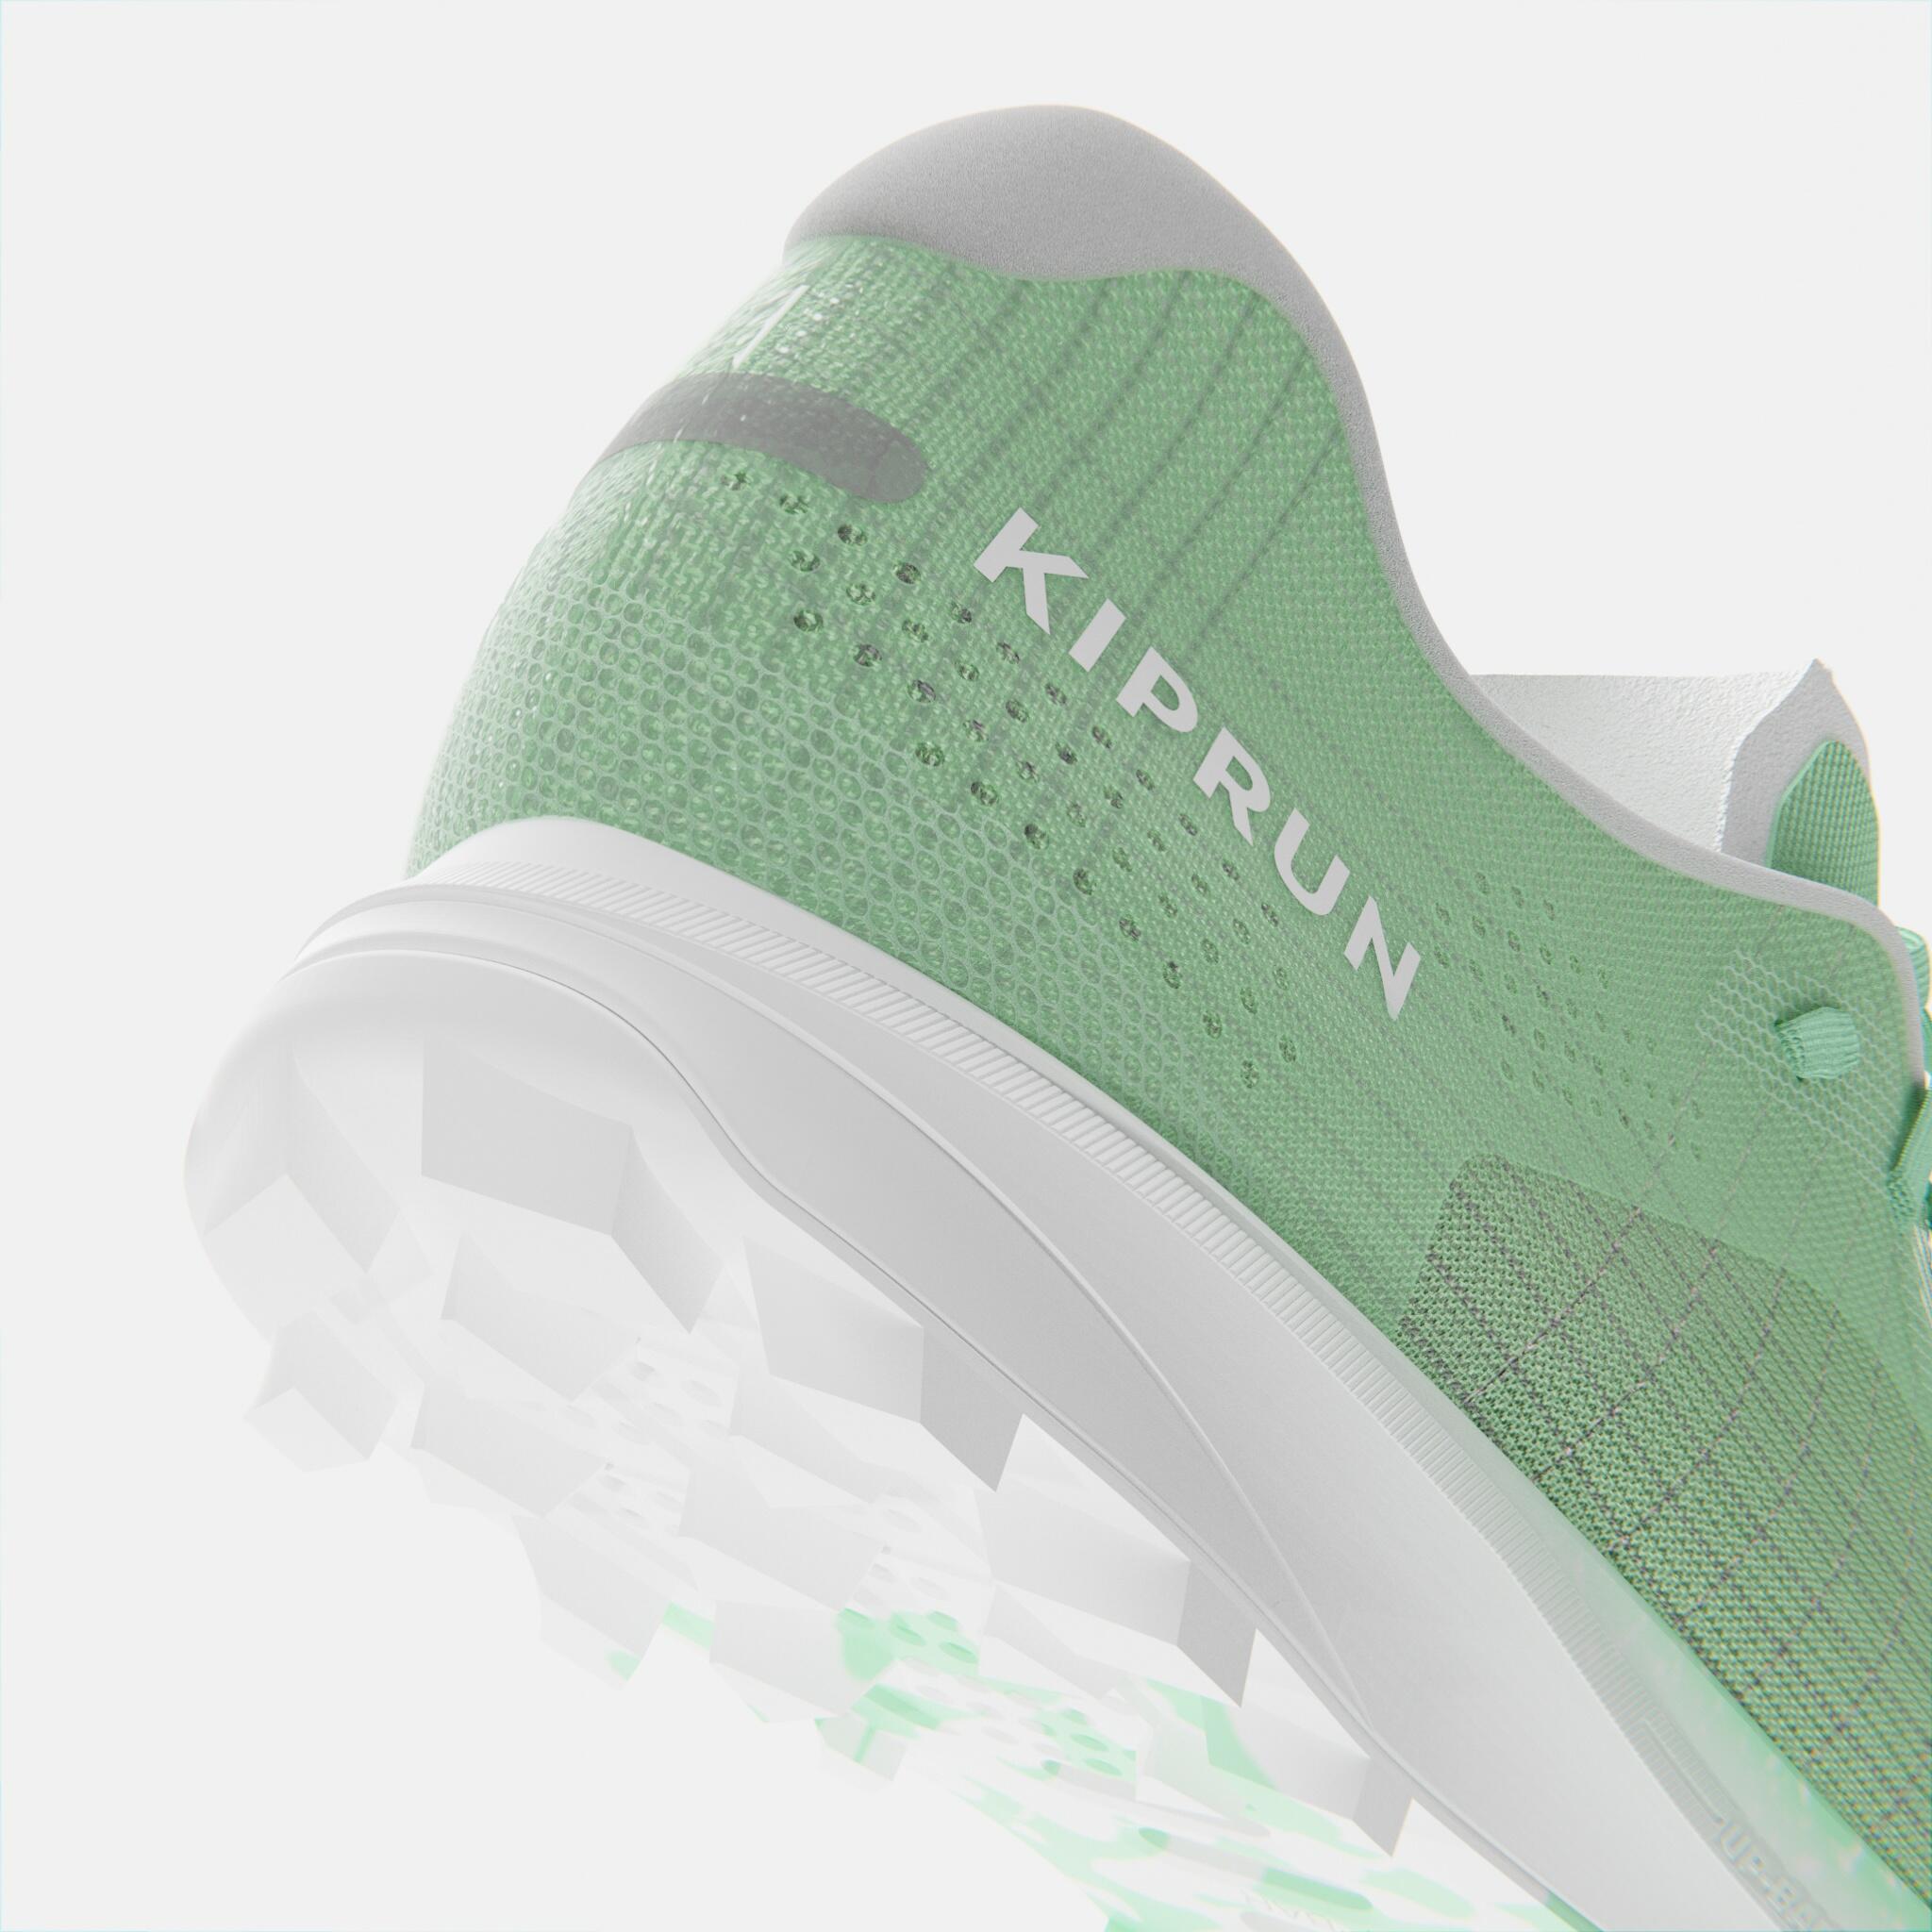 Kiprun Race Light Women's Trail Running Competition Shoes - Light Green 4/9